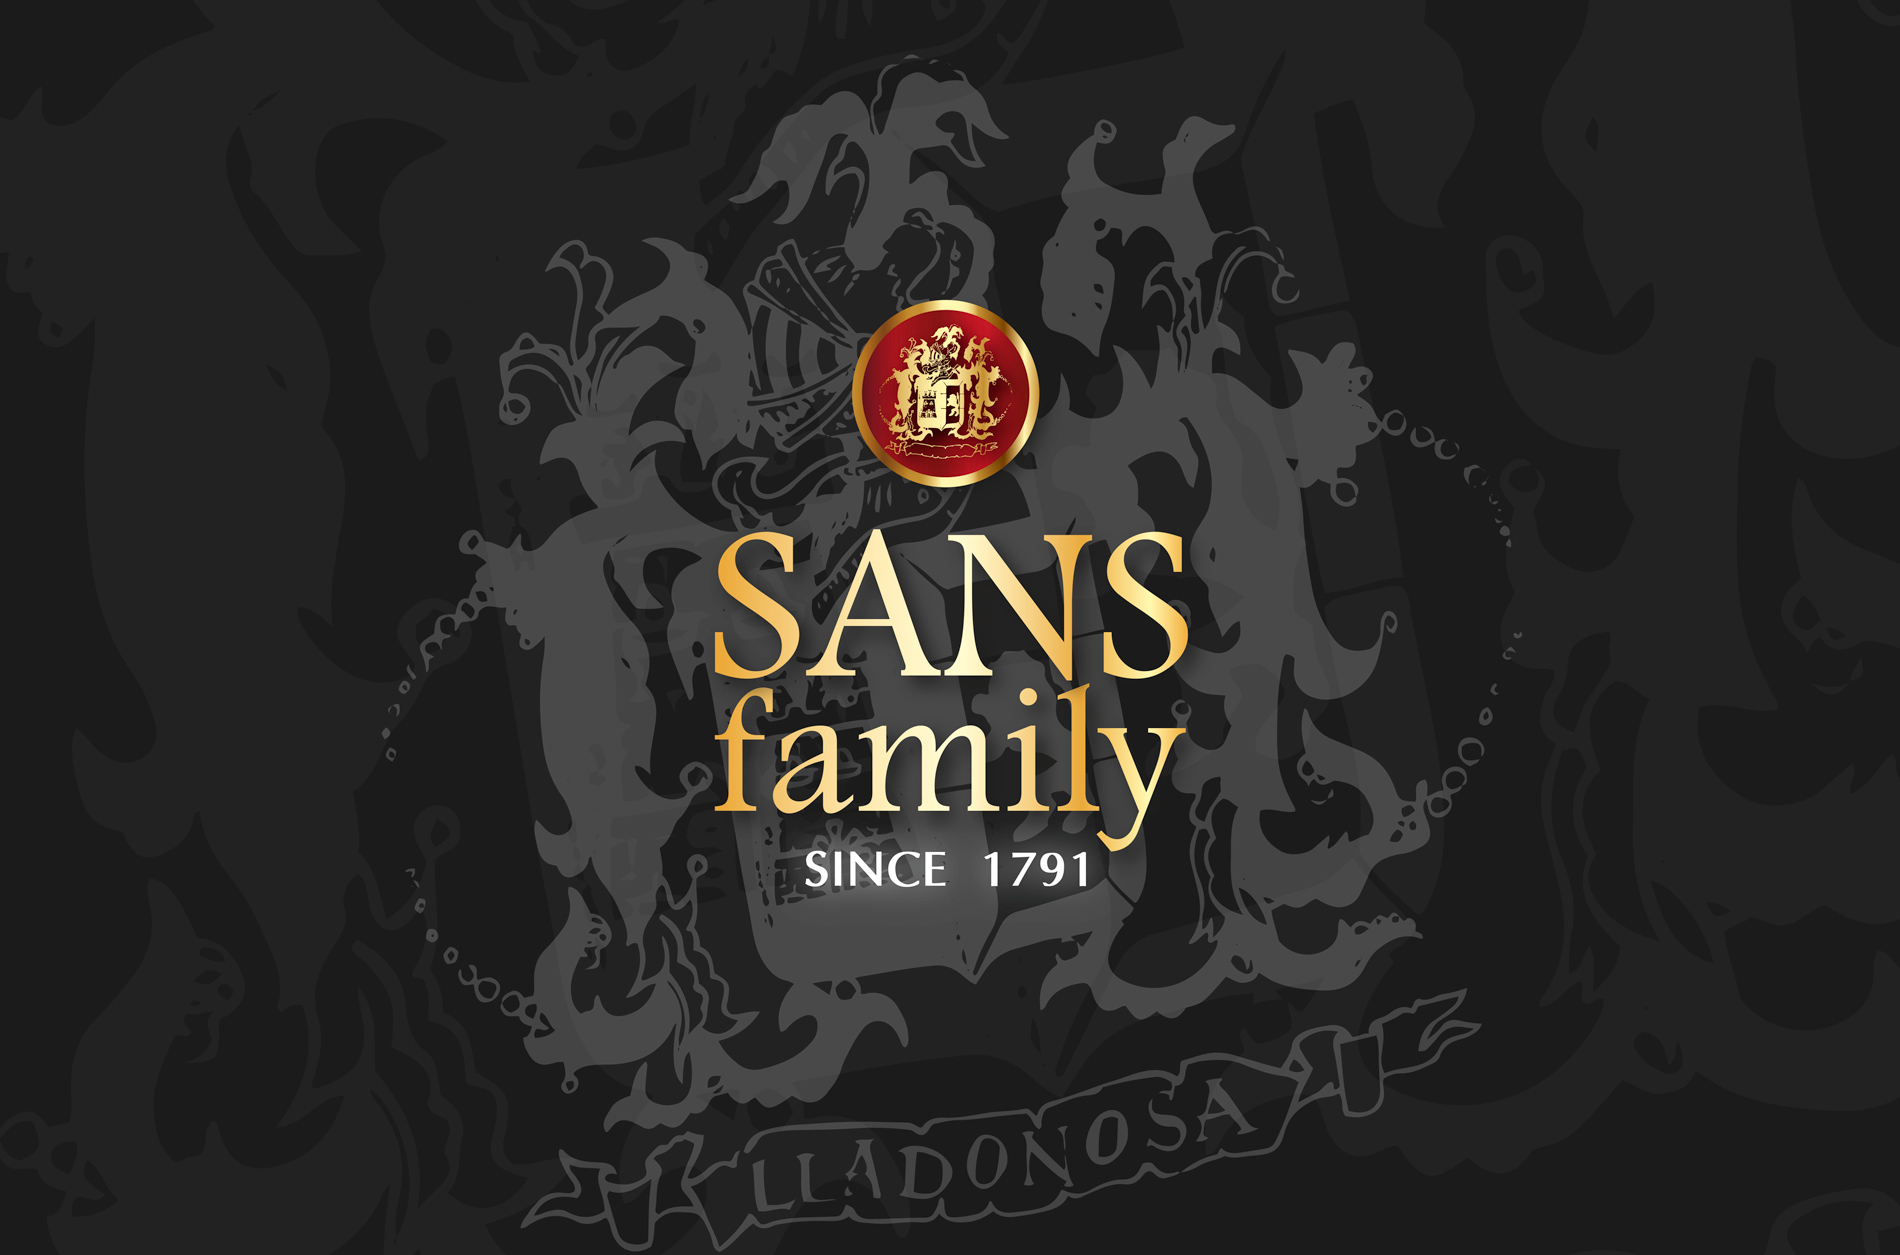 Diseño gráfico y creativo de etiquetas de aceite de oliva virgen extra para la marca SANS FAMILY